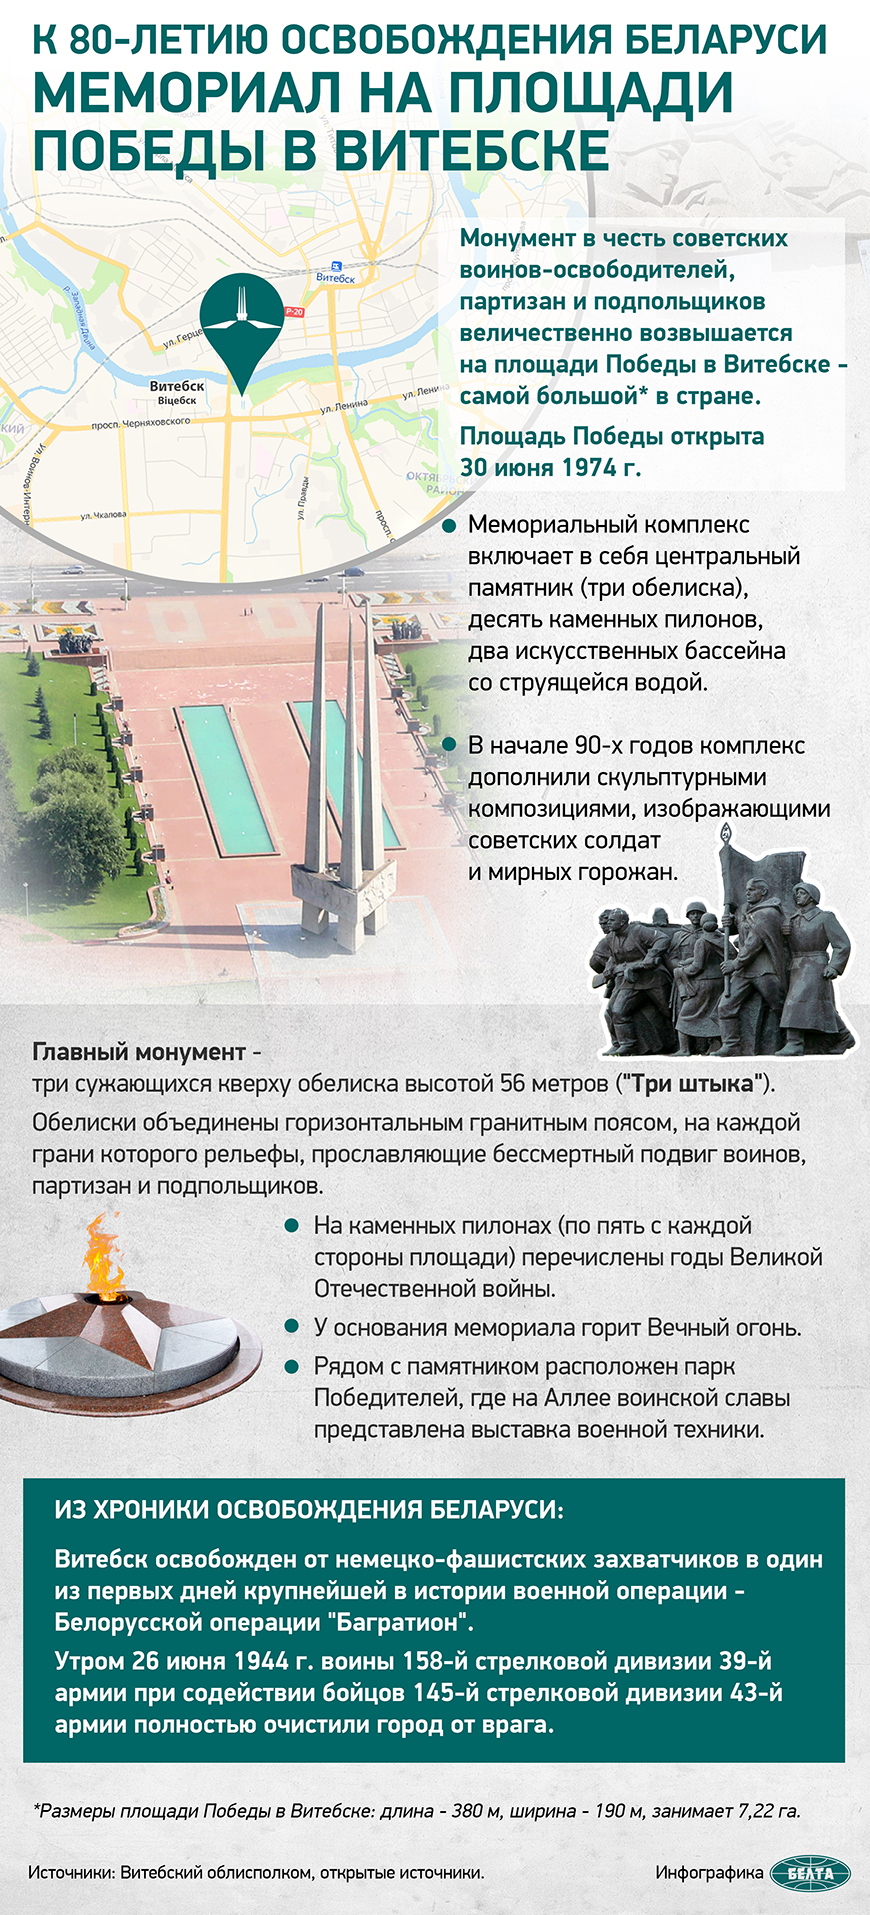 К 80-летию освобождения Беларуси. Мемориал на площади Победы в Витебске